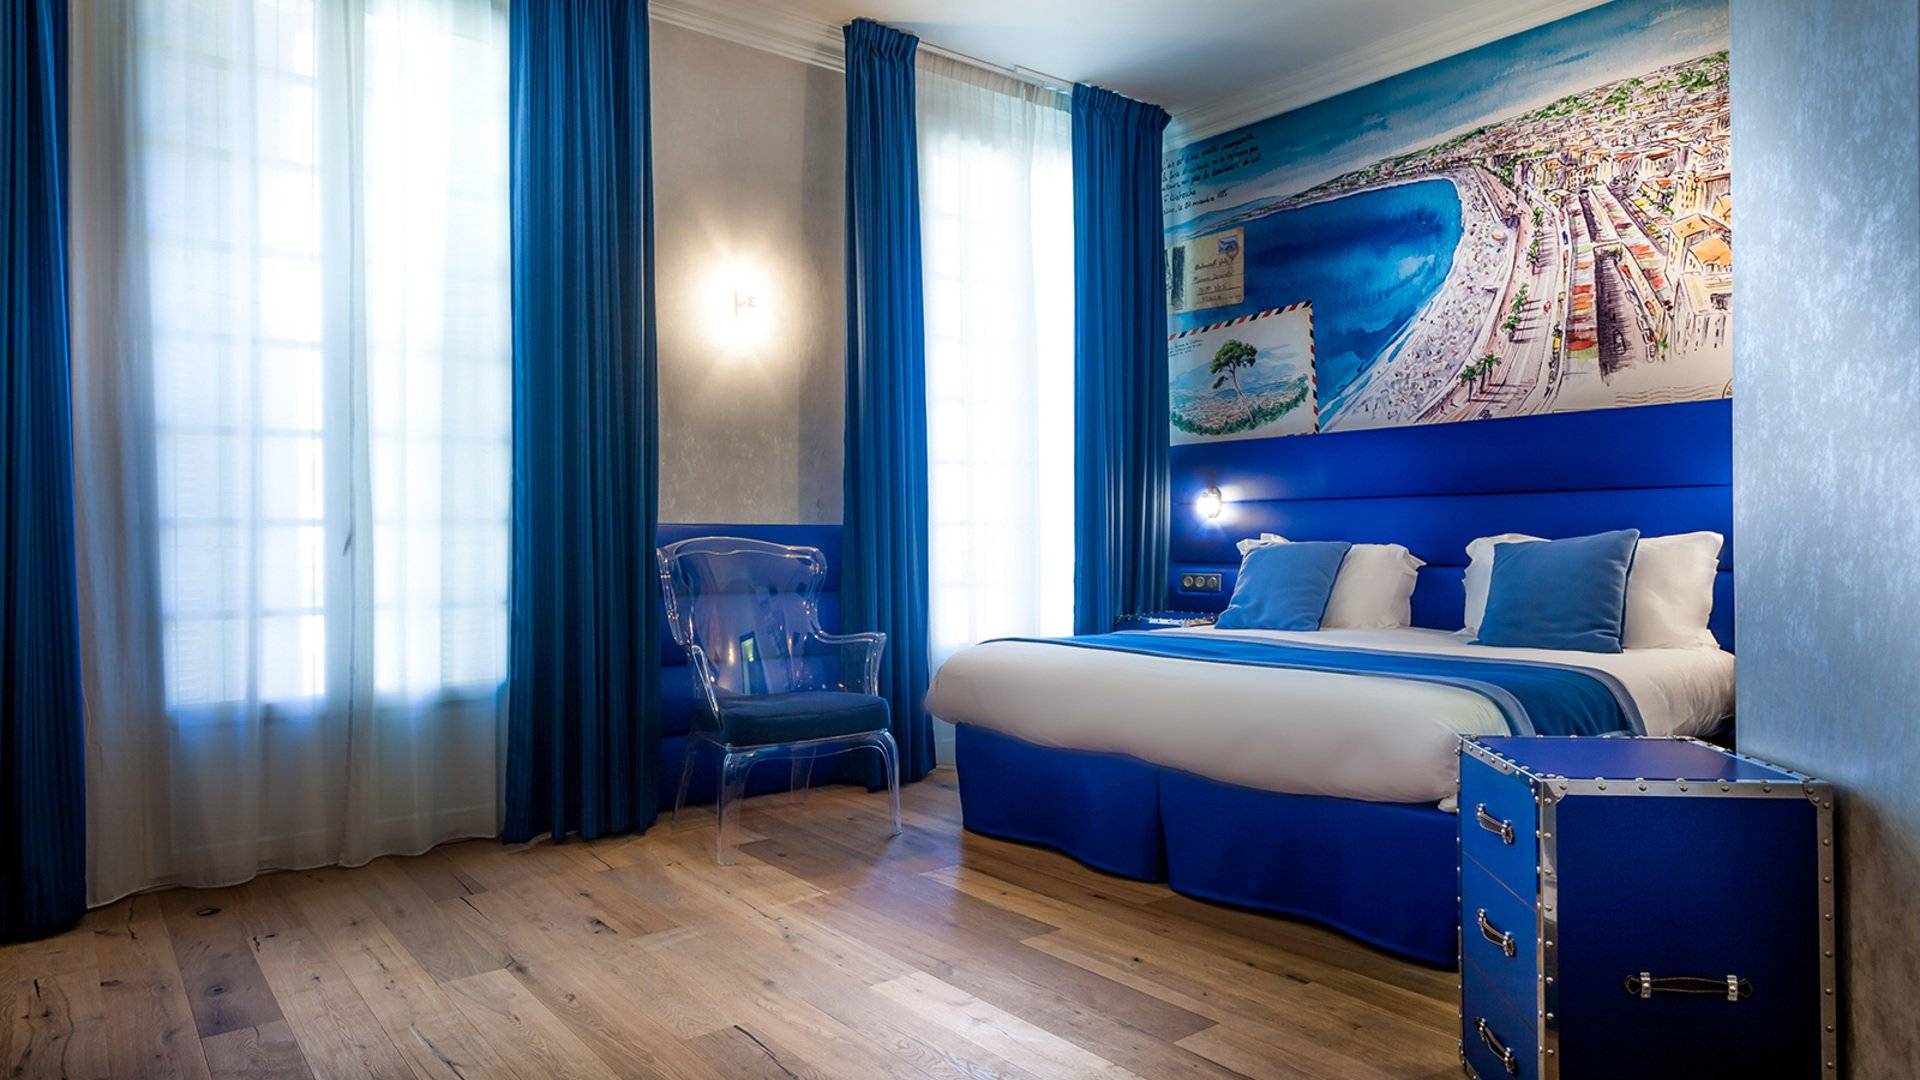 Спальня в синих тонах: как оформить, выбор освещения и декора